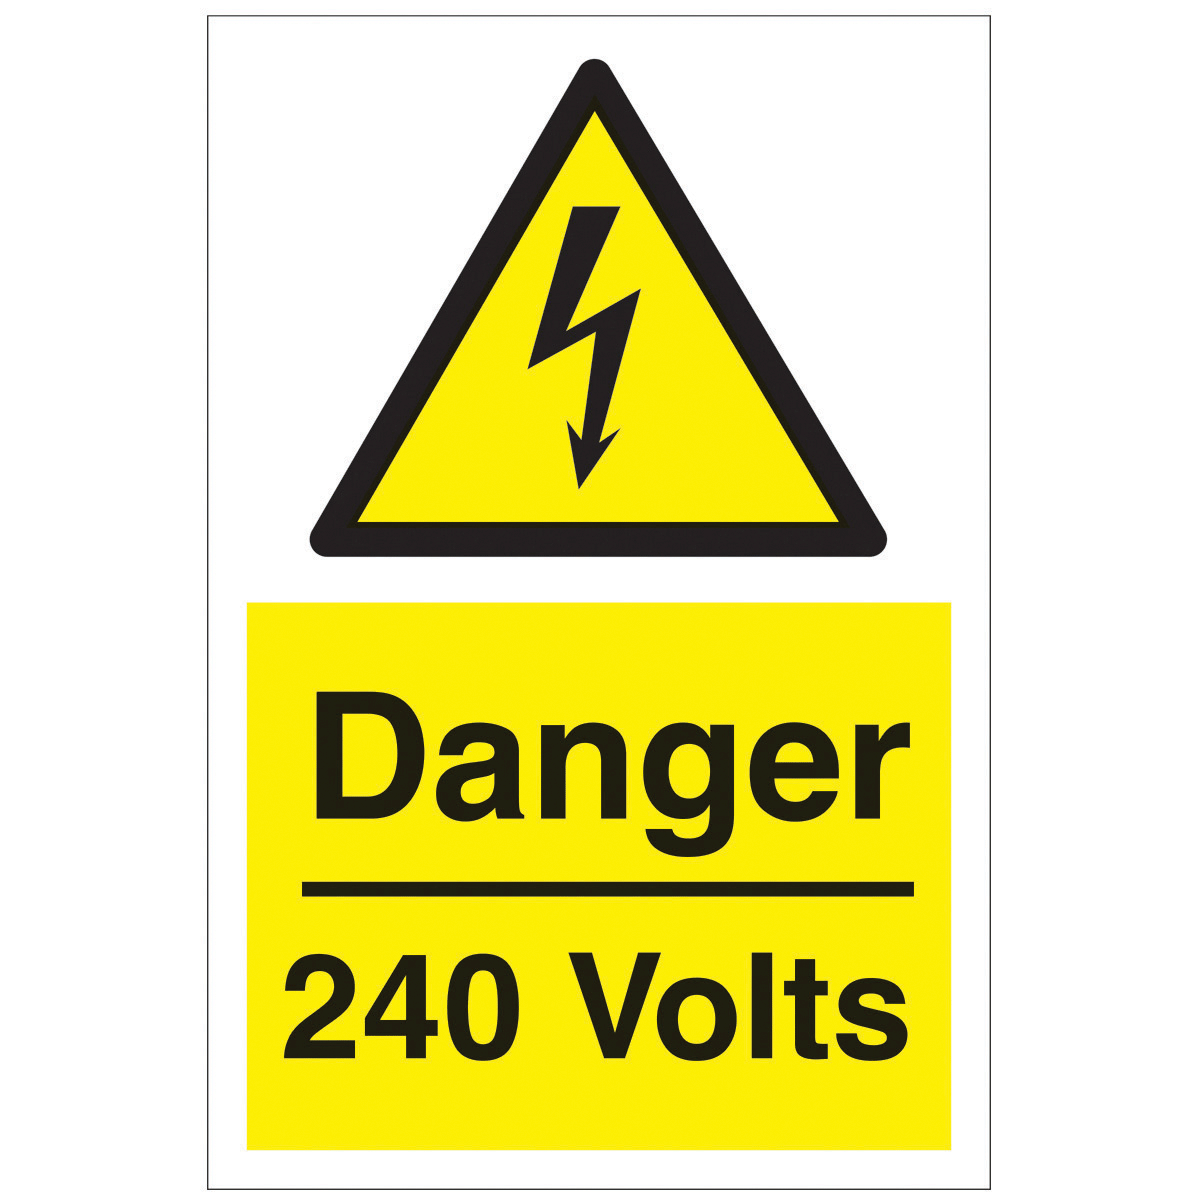 Danger 240 Volts Safety Sign - Hazard & Warning Sign from BiGDUG UK